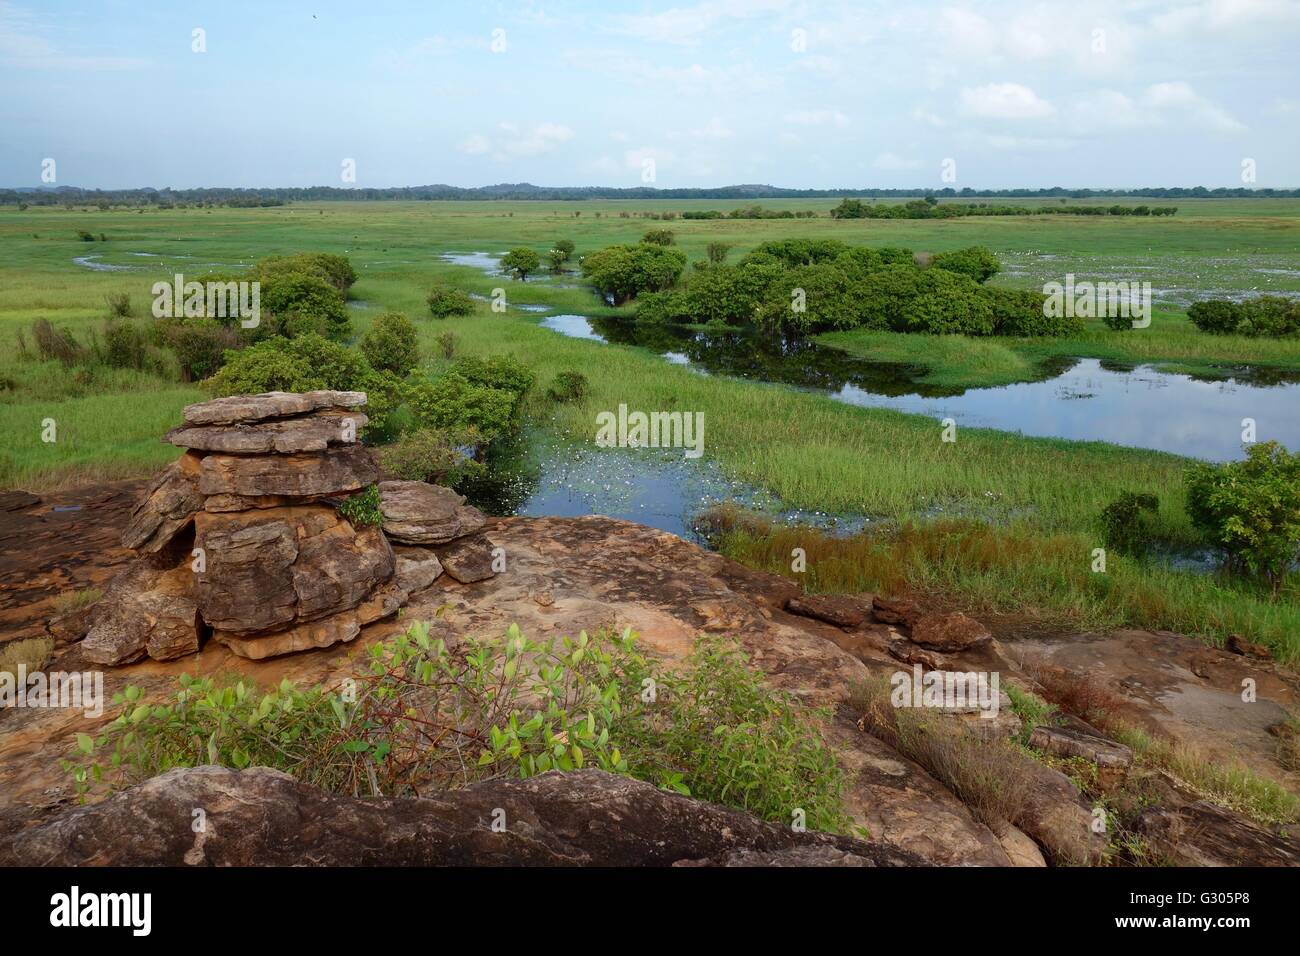 Vue sur les plaines inondables et les zones humides de l'Est près de la rivière Alligator dans l'ouest de la terre d'Arnhem, dans le Territoire du Nord, Australie Banque D'Images